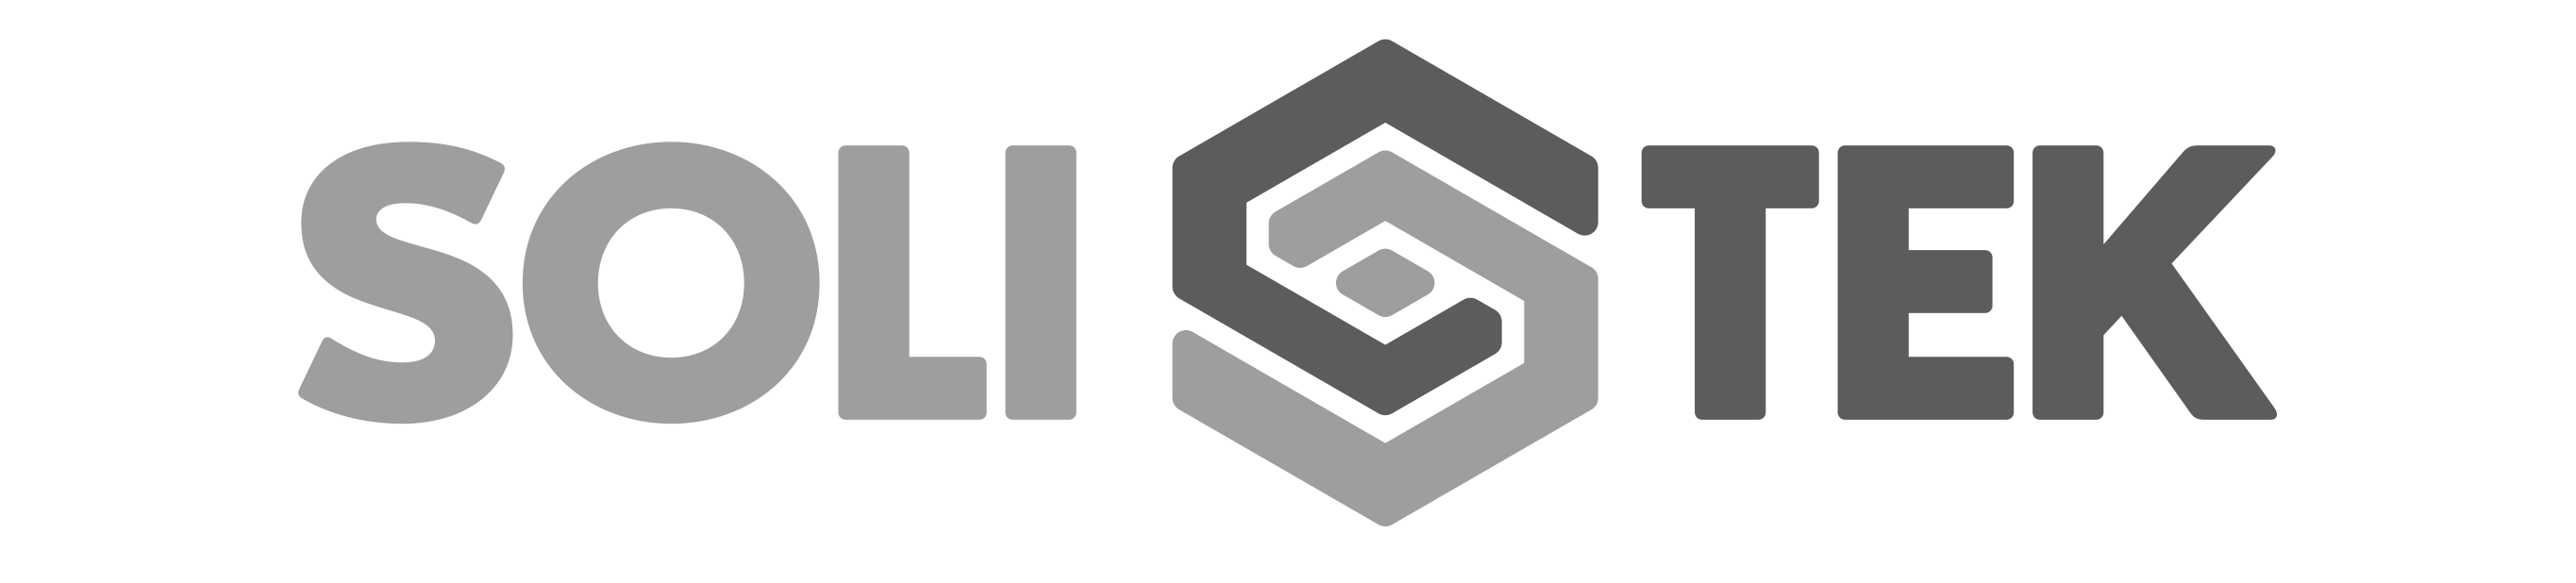 solitek-logo-png